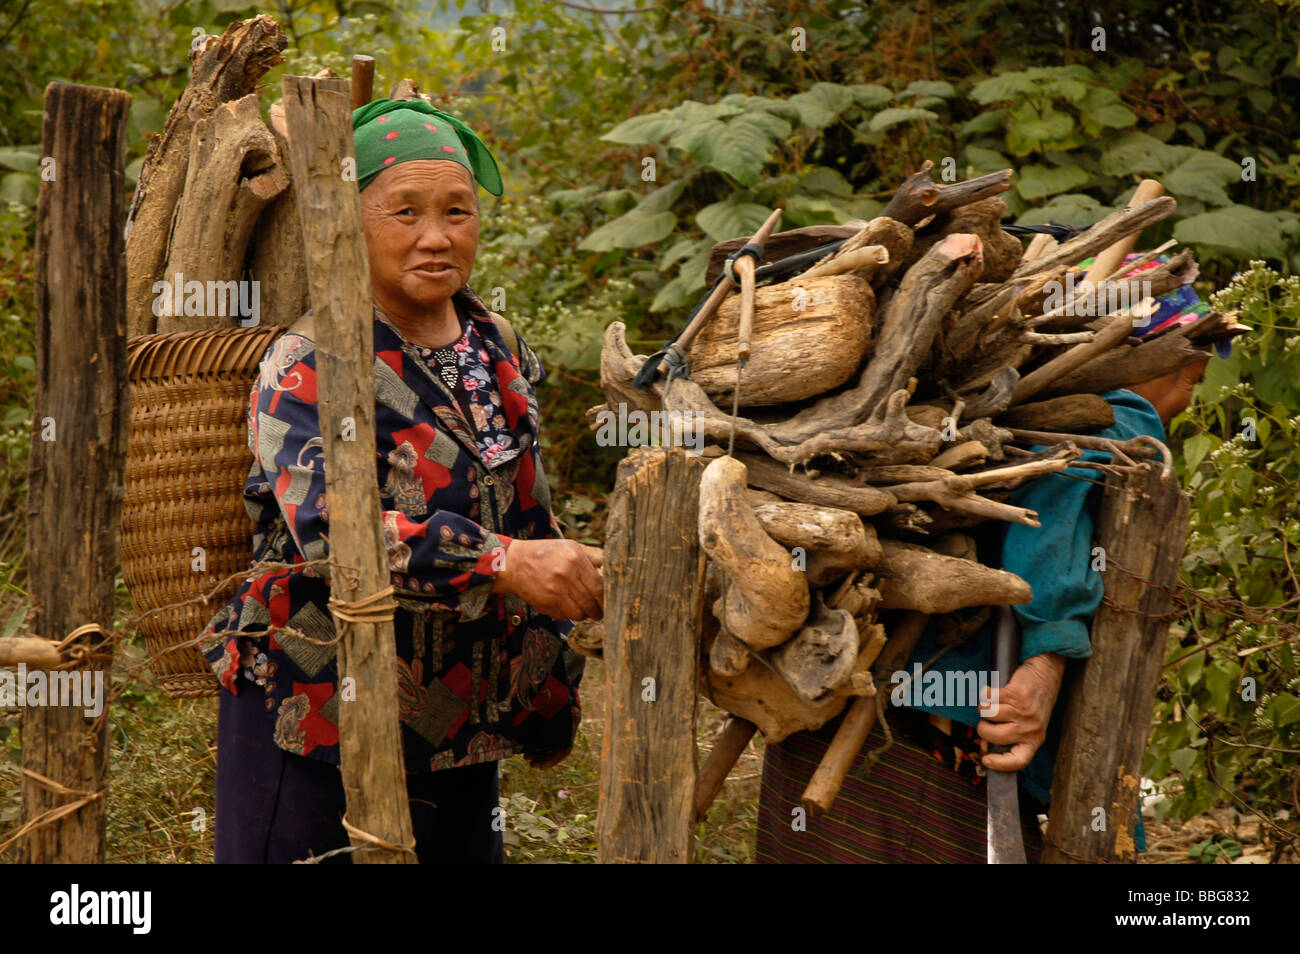 Les femmes laotiennes transportant du bois sur leurs épaules dans le village de minorités ethniques de Vang Vieng, Laos. Banque D'Images